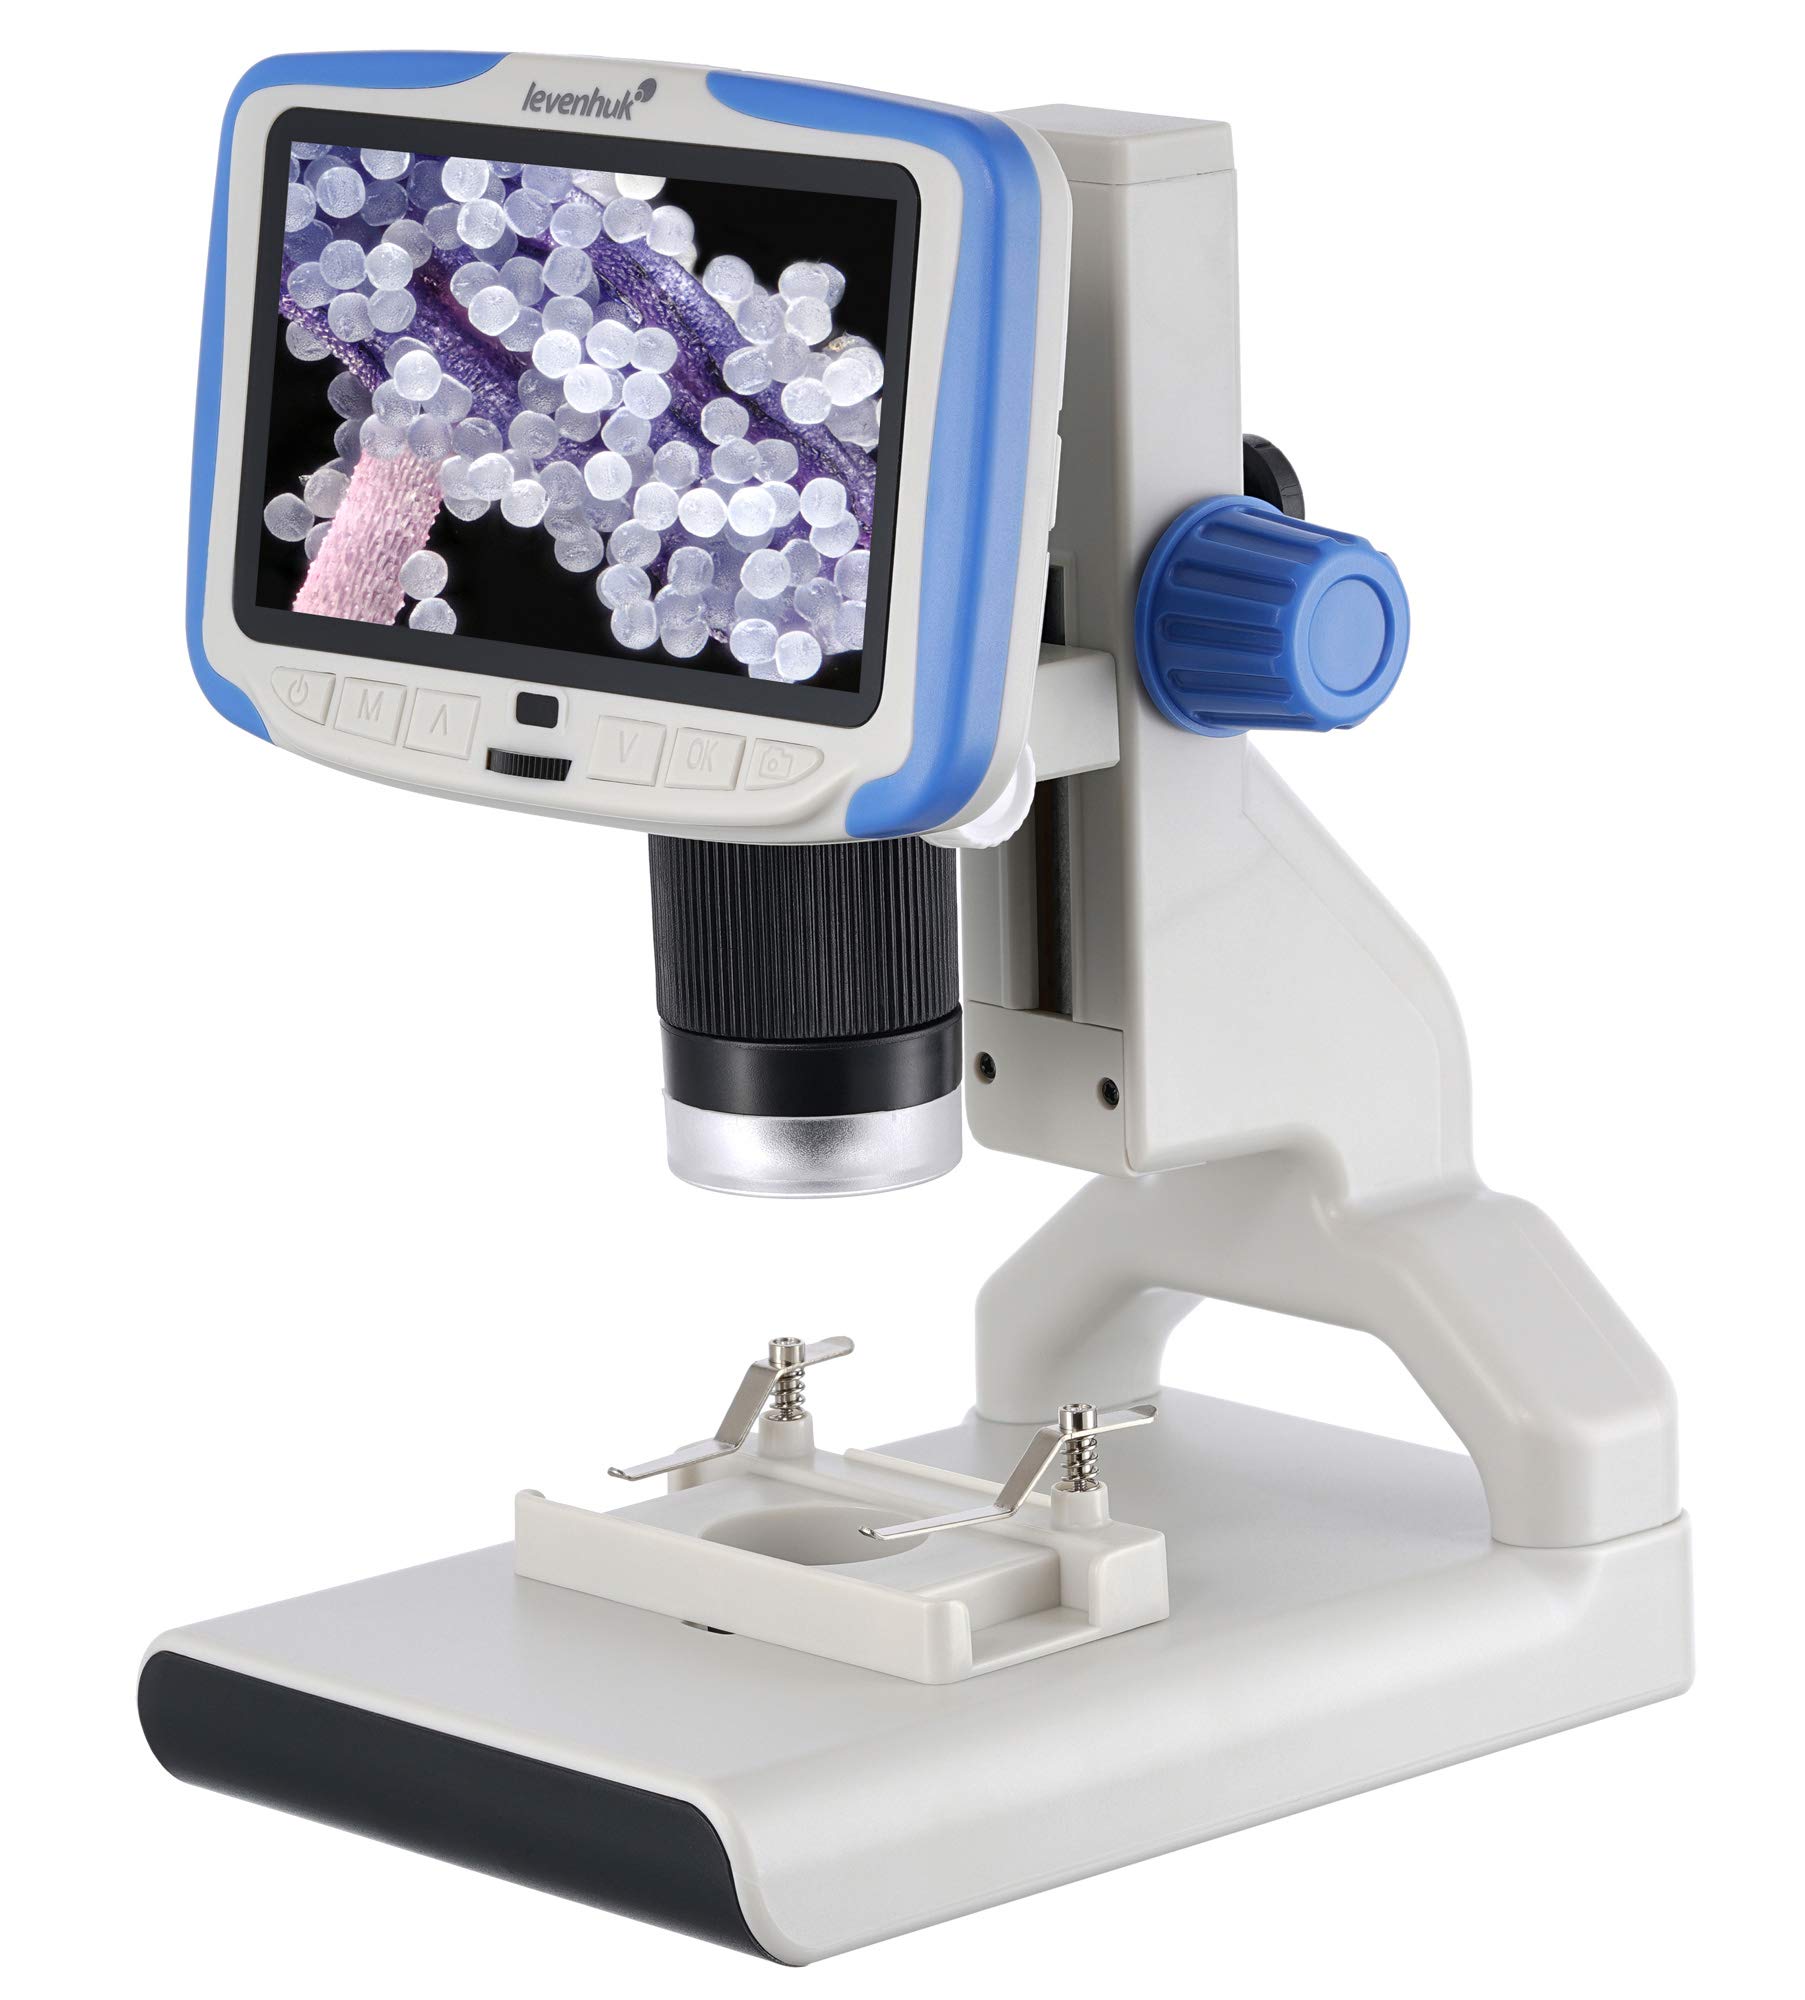 Levenhuk Rainbow DM500 Digitales Drahtloses Mikroskop mit 12,7-cm-LCD-Bildschirm, 10- bis 200-Facher Vergrößerung, Fernbedienung und Objektträgern im Set